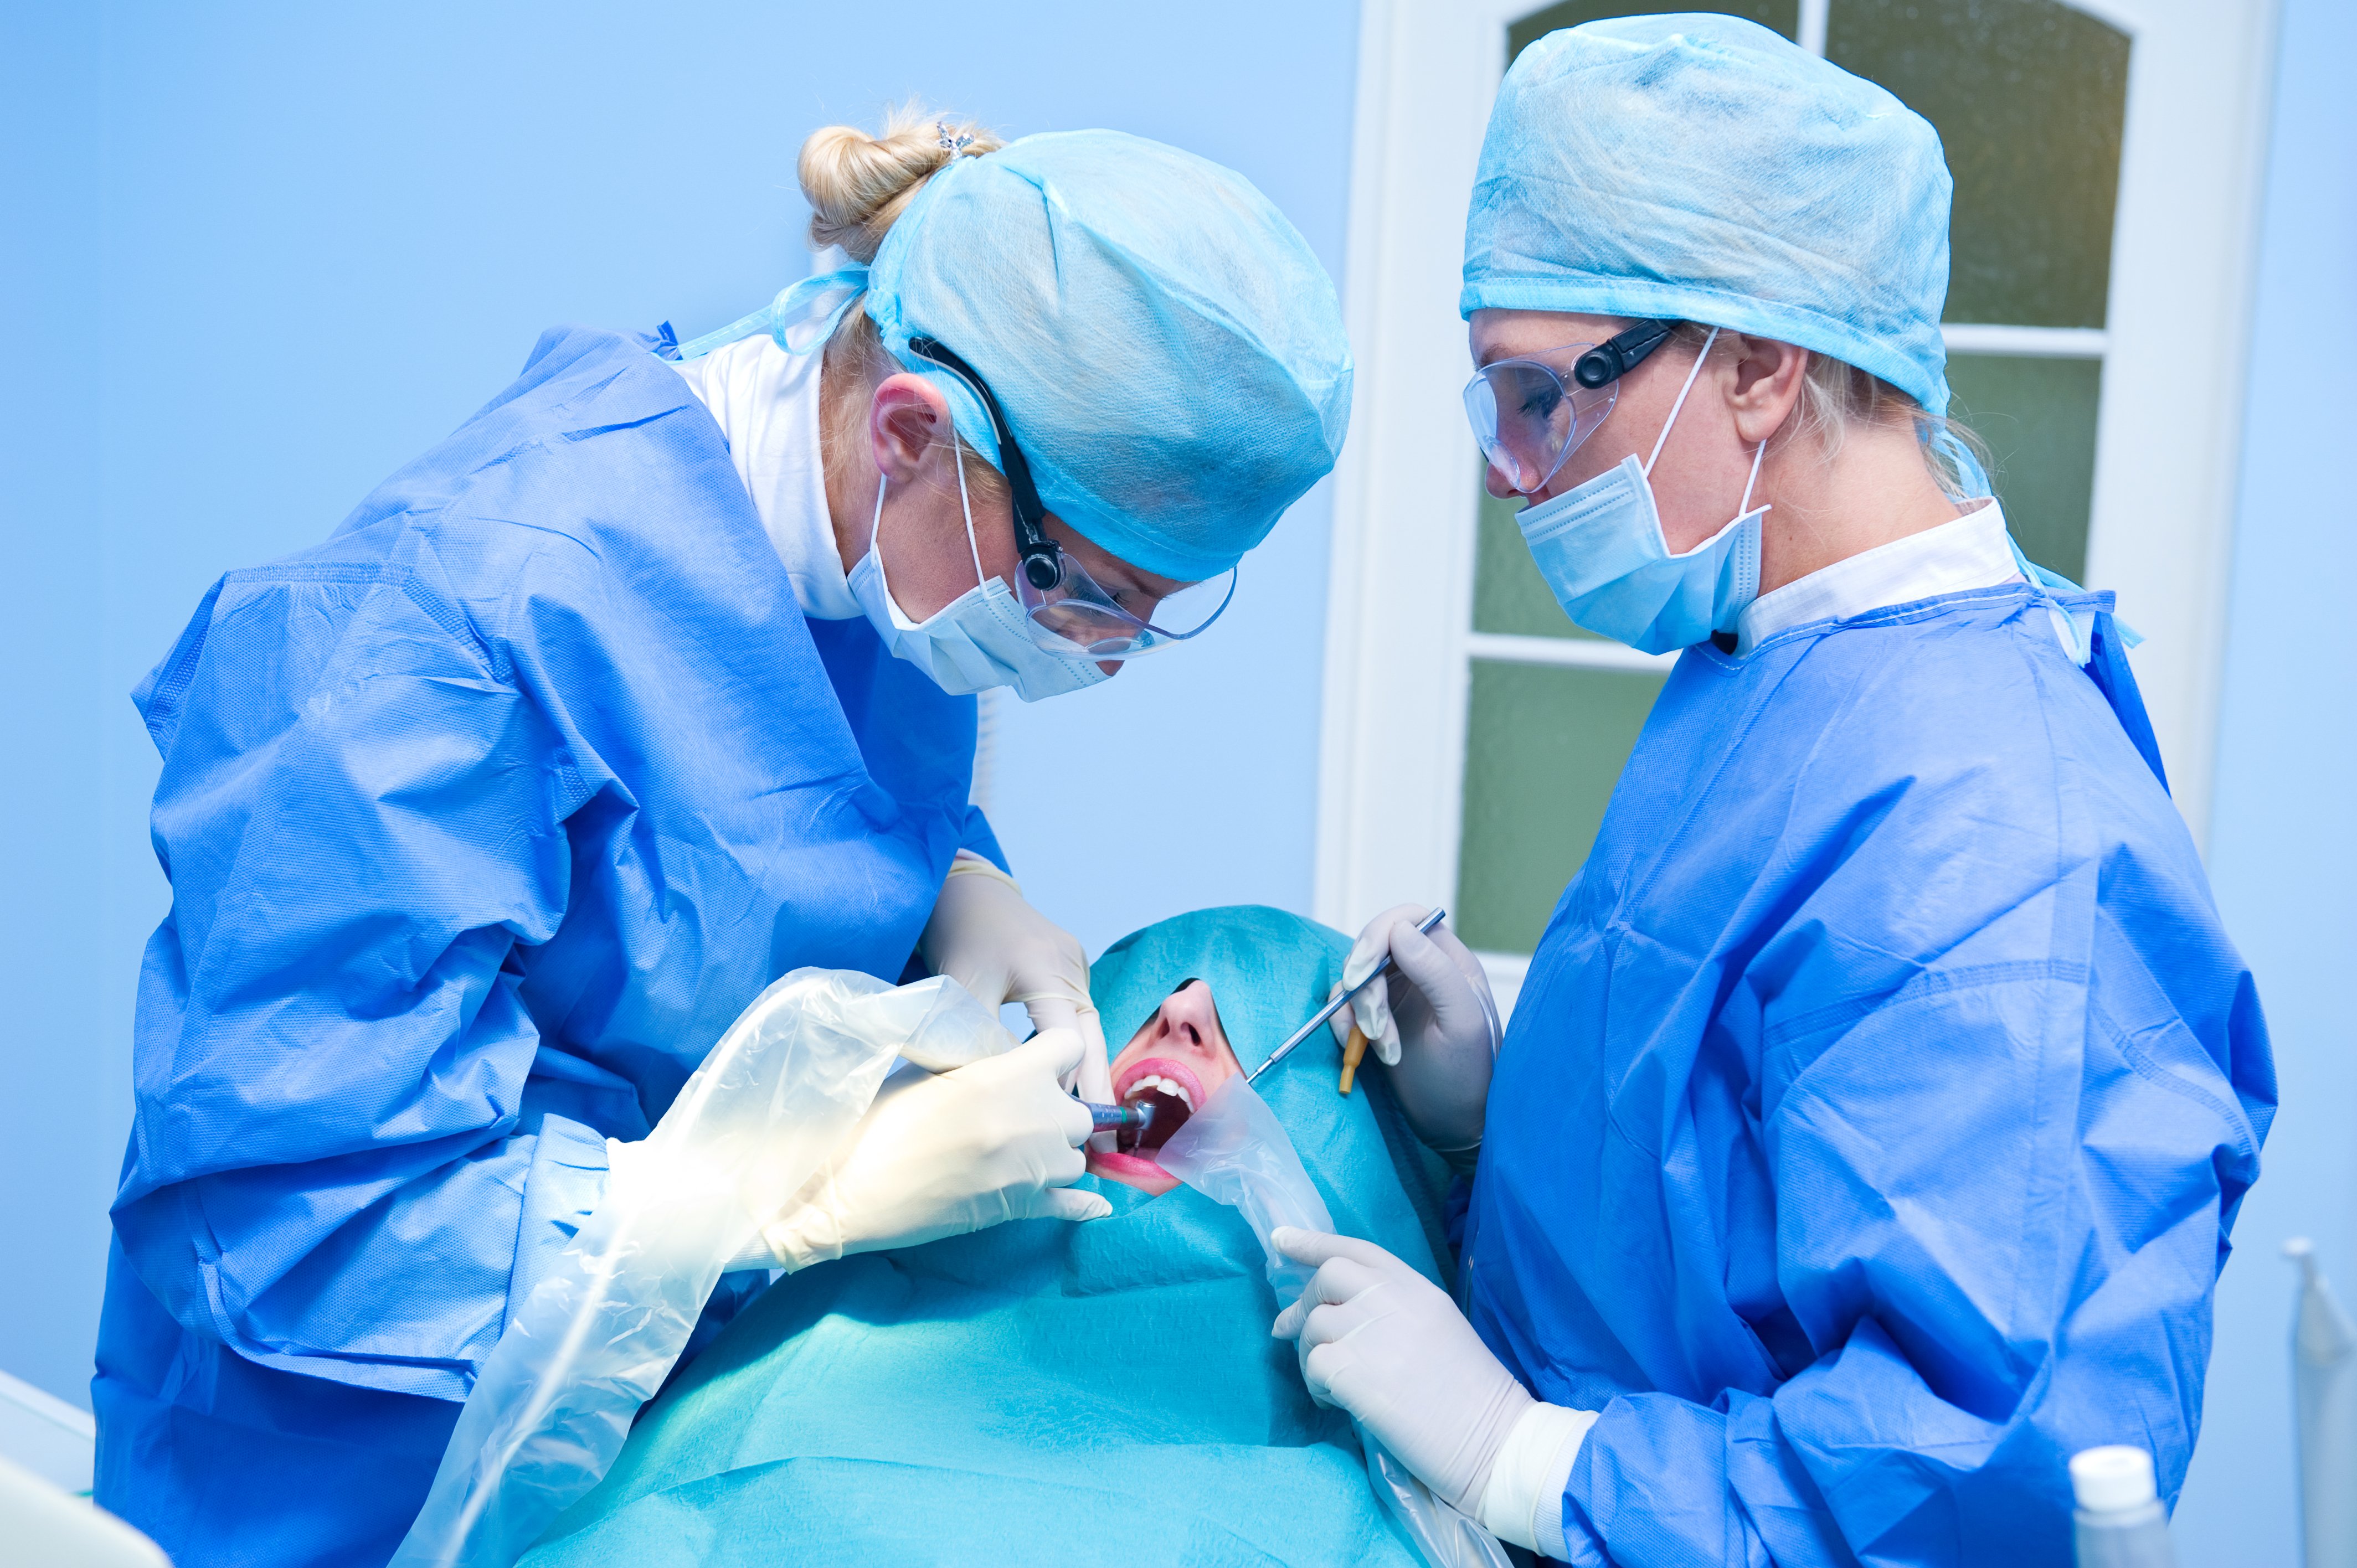 Перфорація гайморової пазухи при видаленні зуба: причини та способи лікування